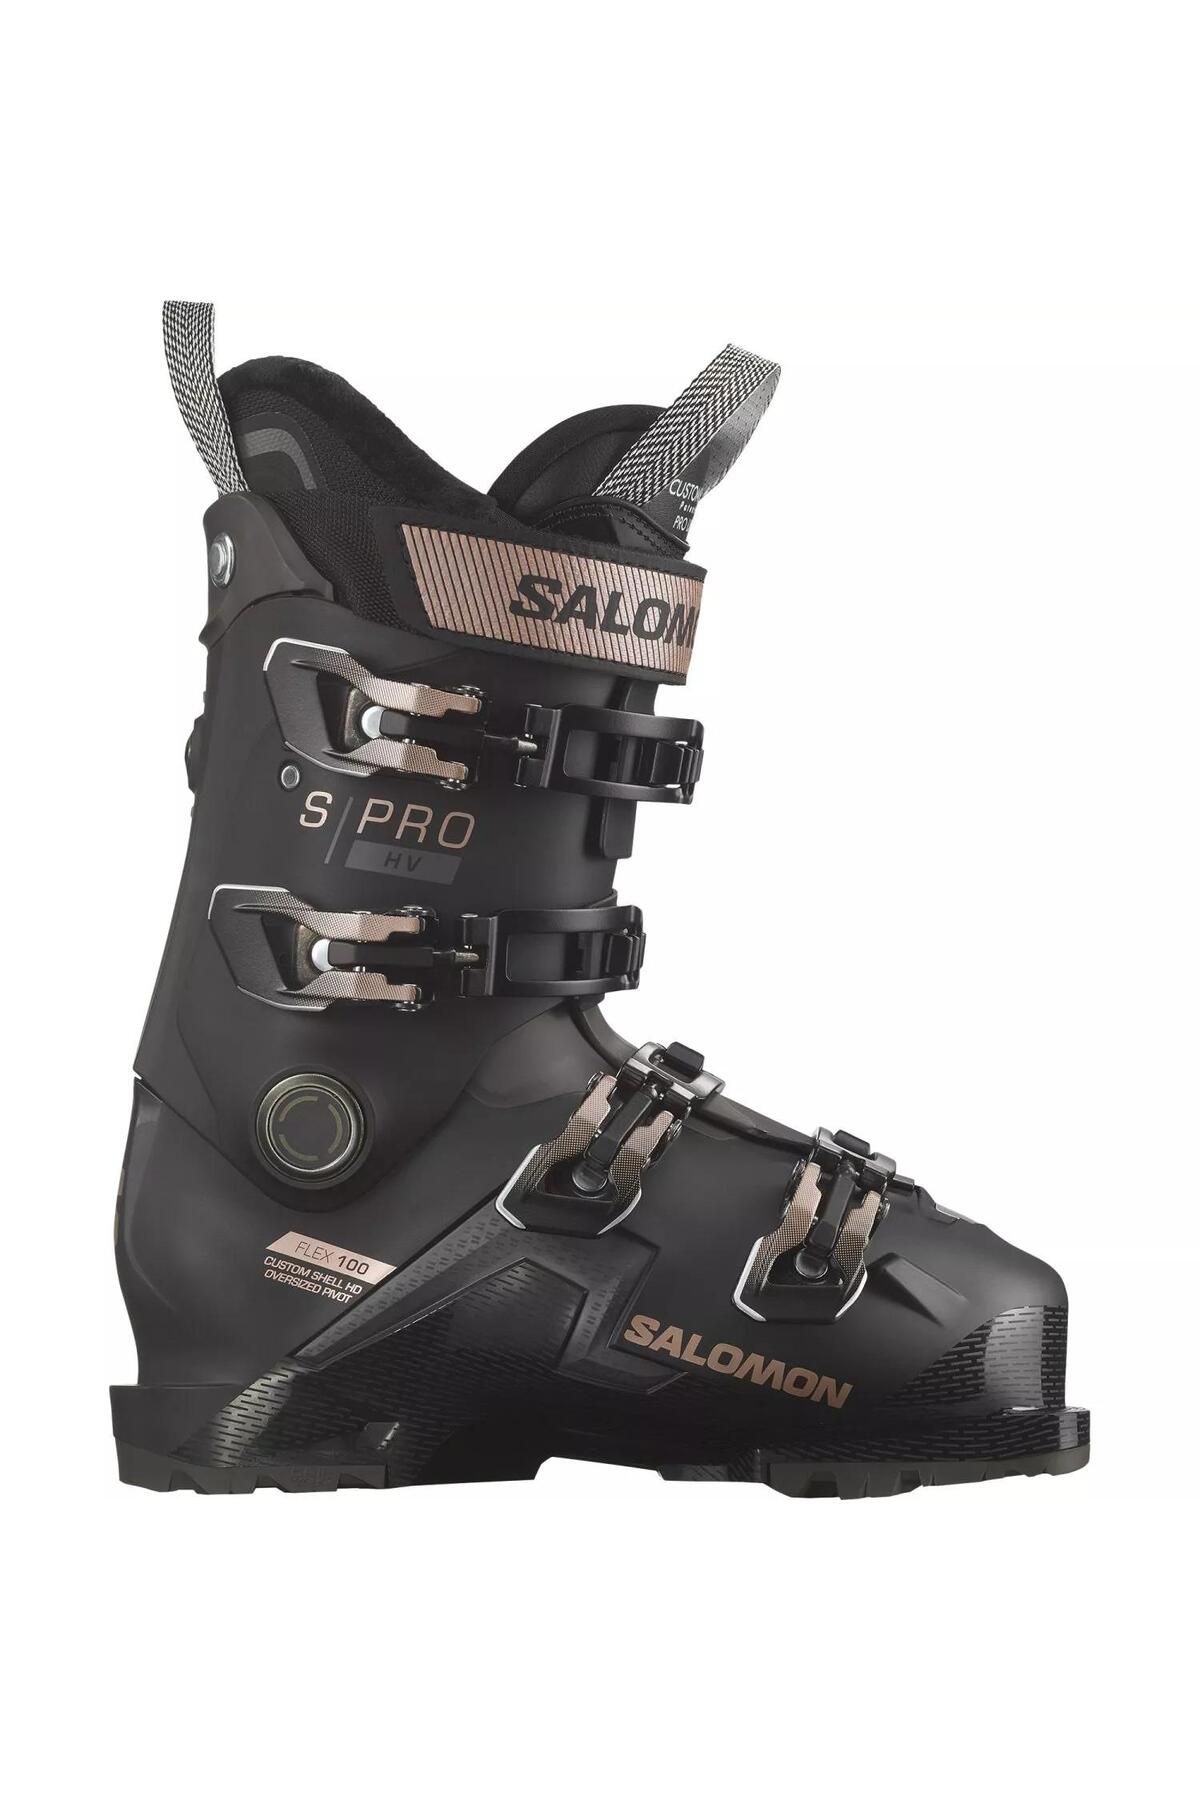 Salomon S/pro Hv 100 Kadın Kayak Ayakkabısı-l47344100blk